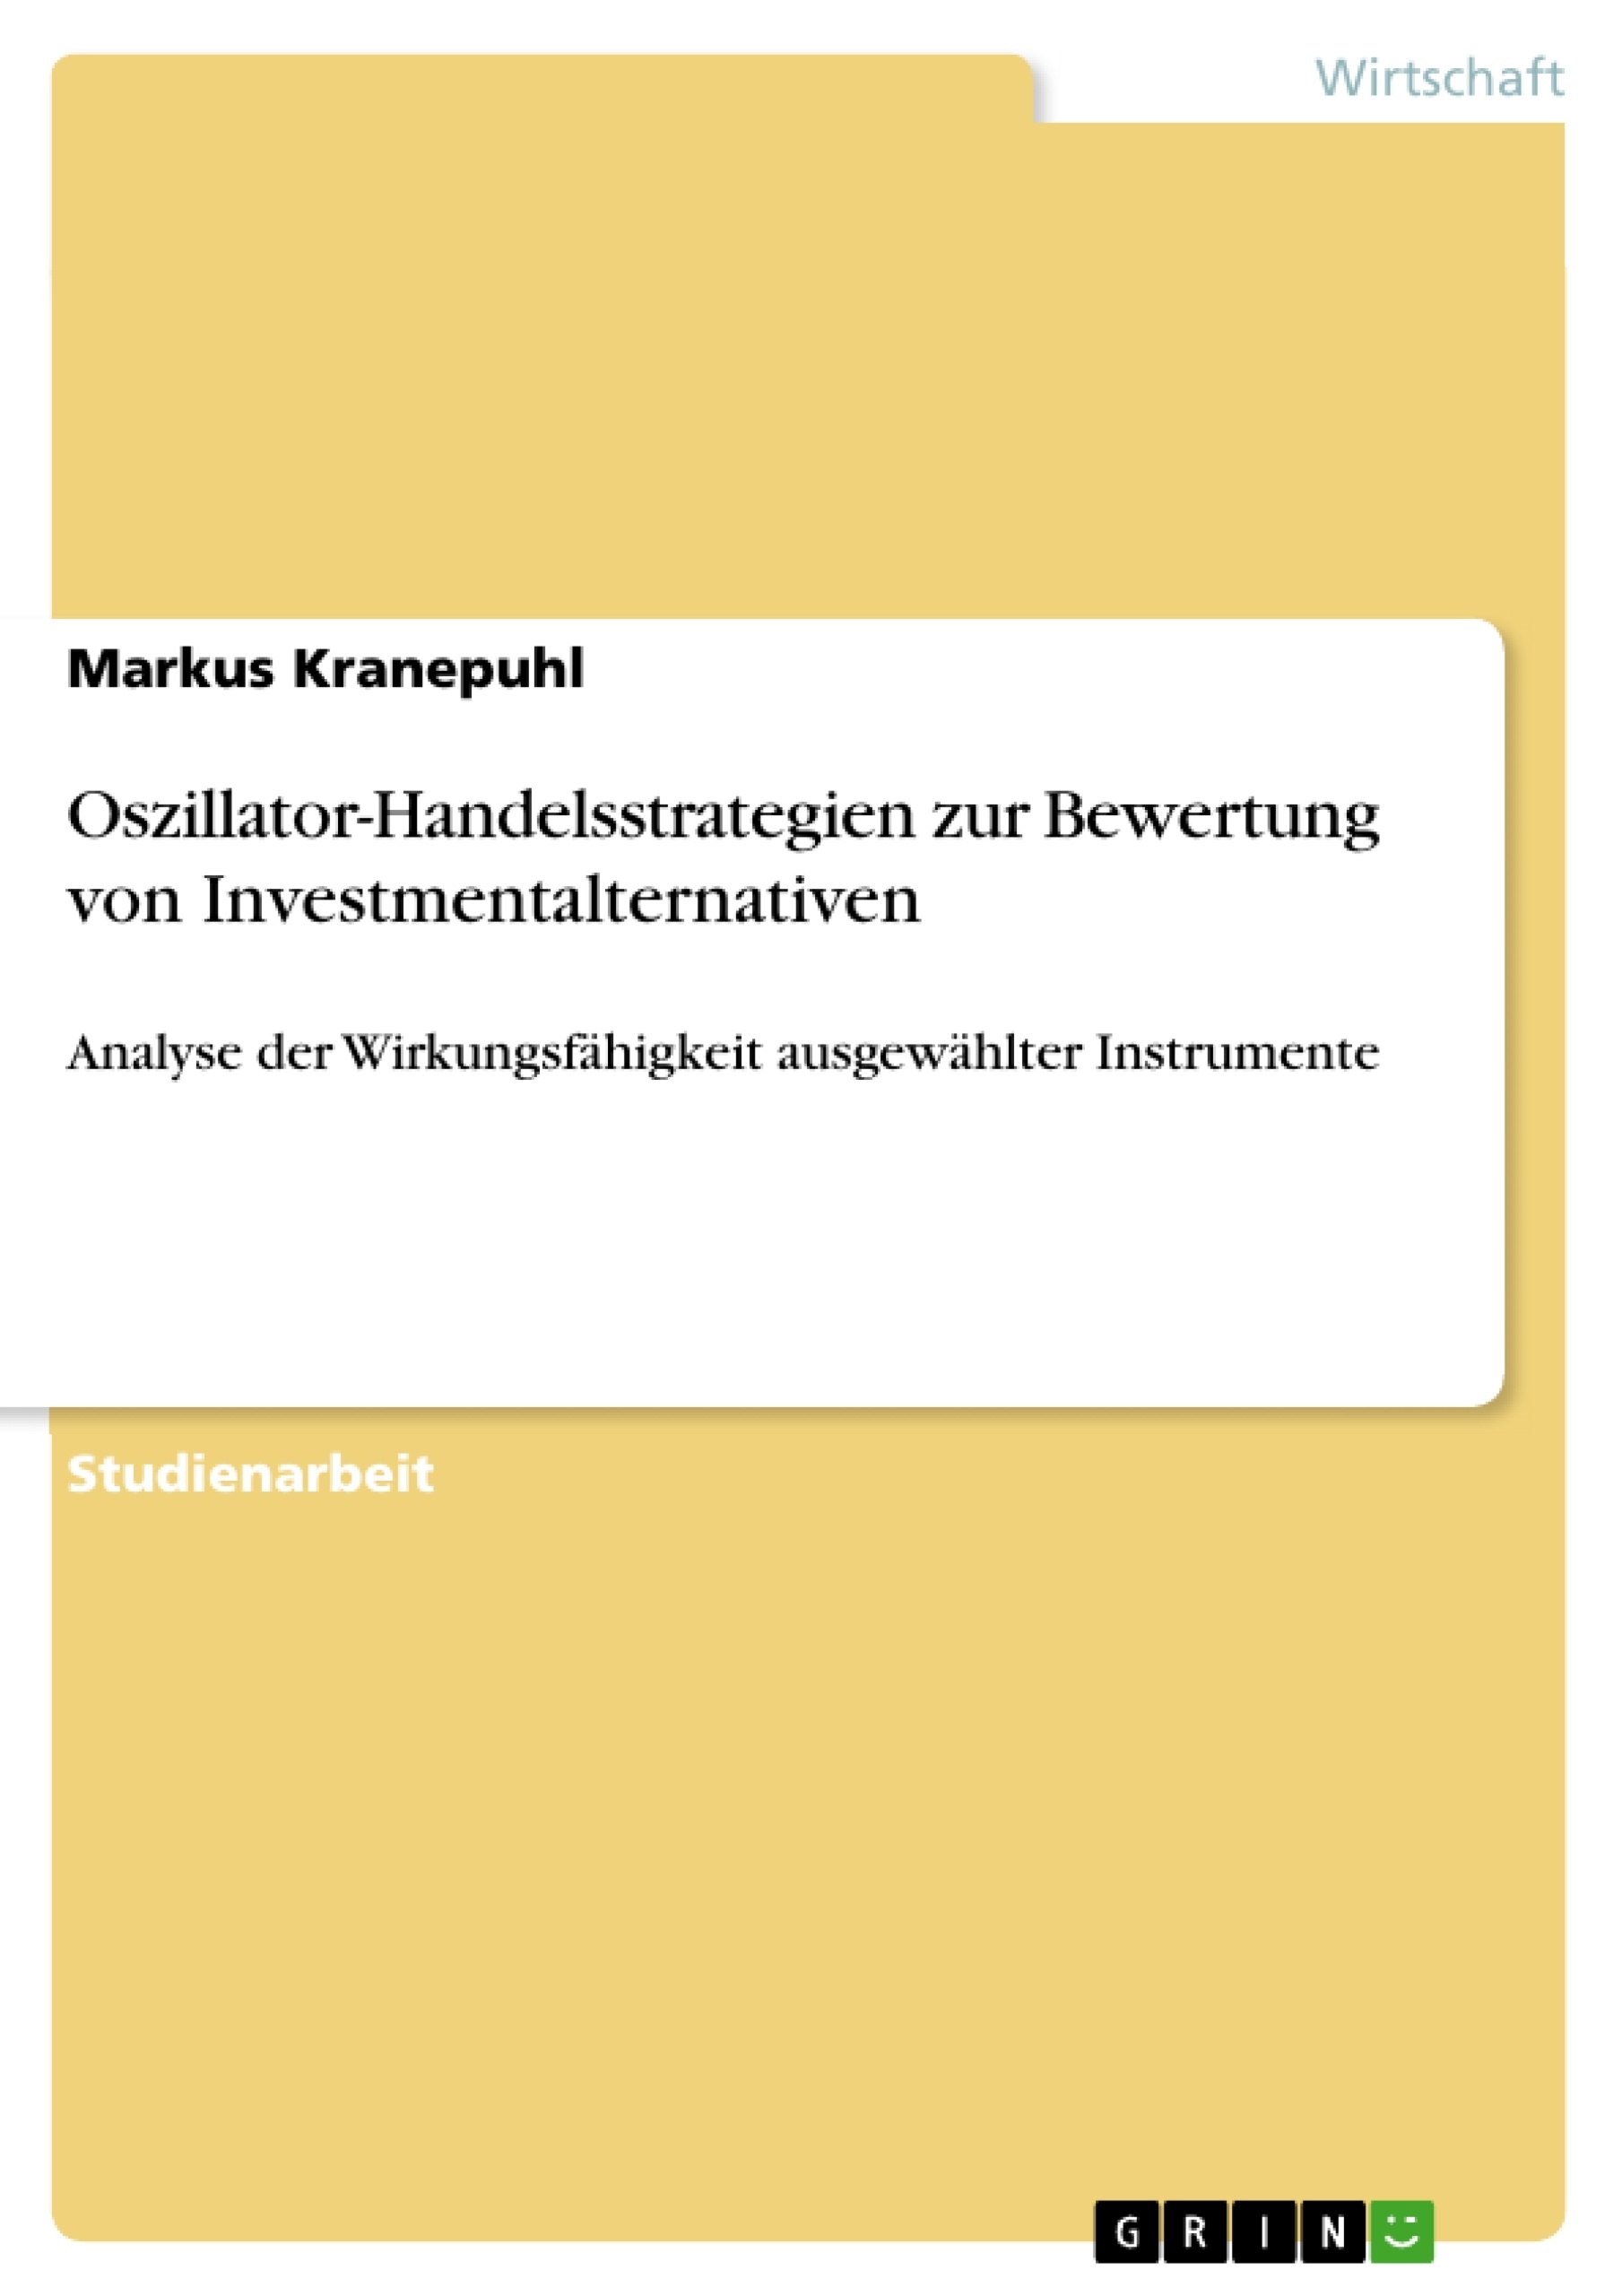 Título: Oszillator-Handelsstrategien zur Bewertung von Investmentalternativen